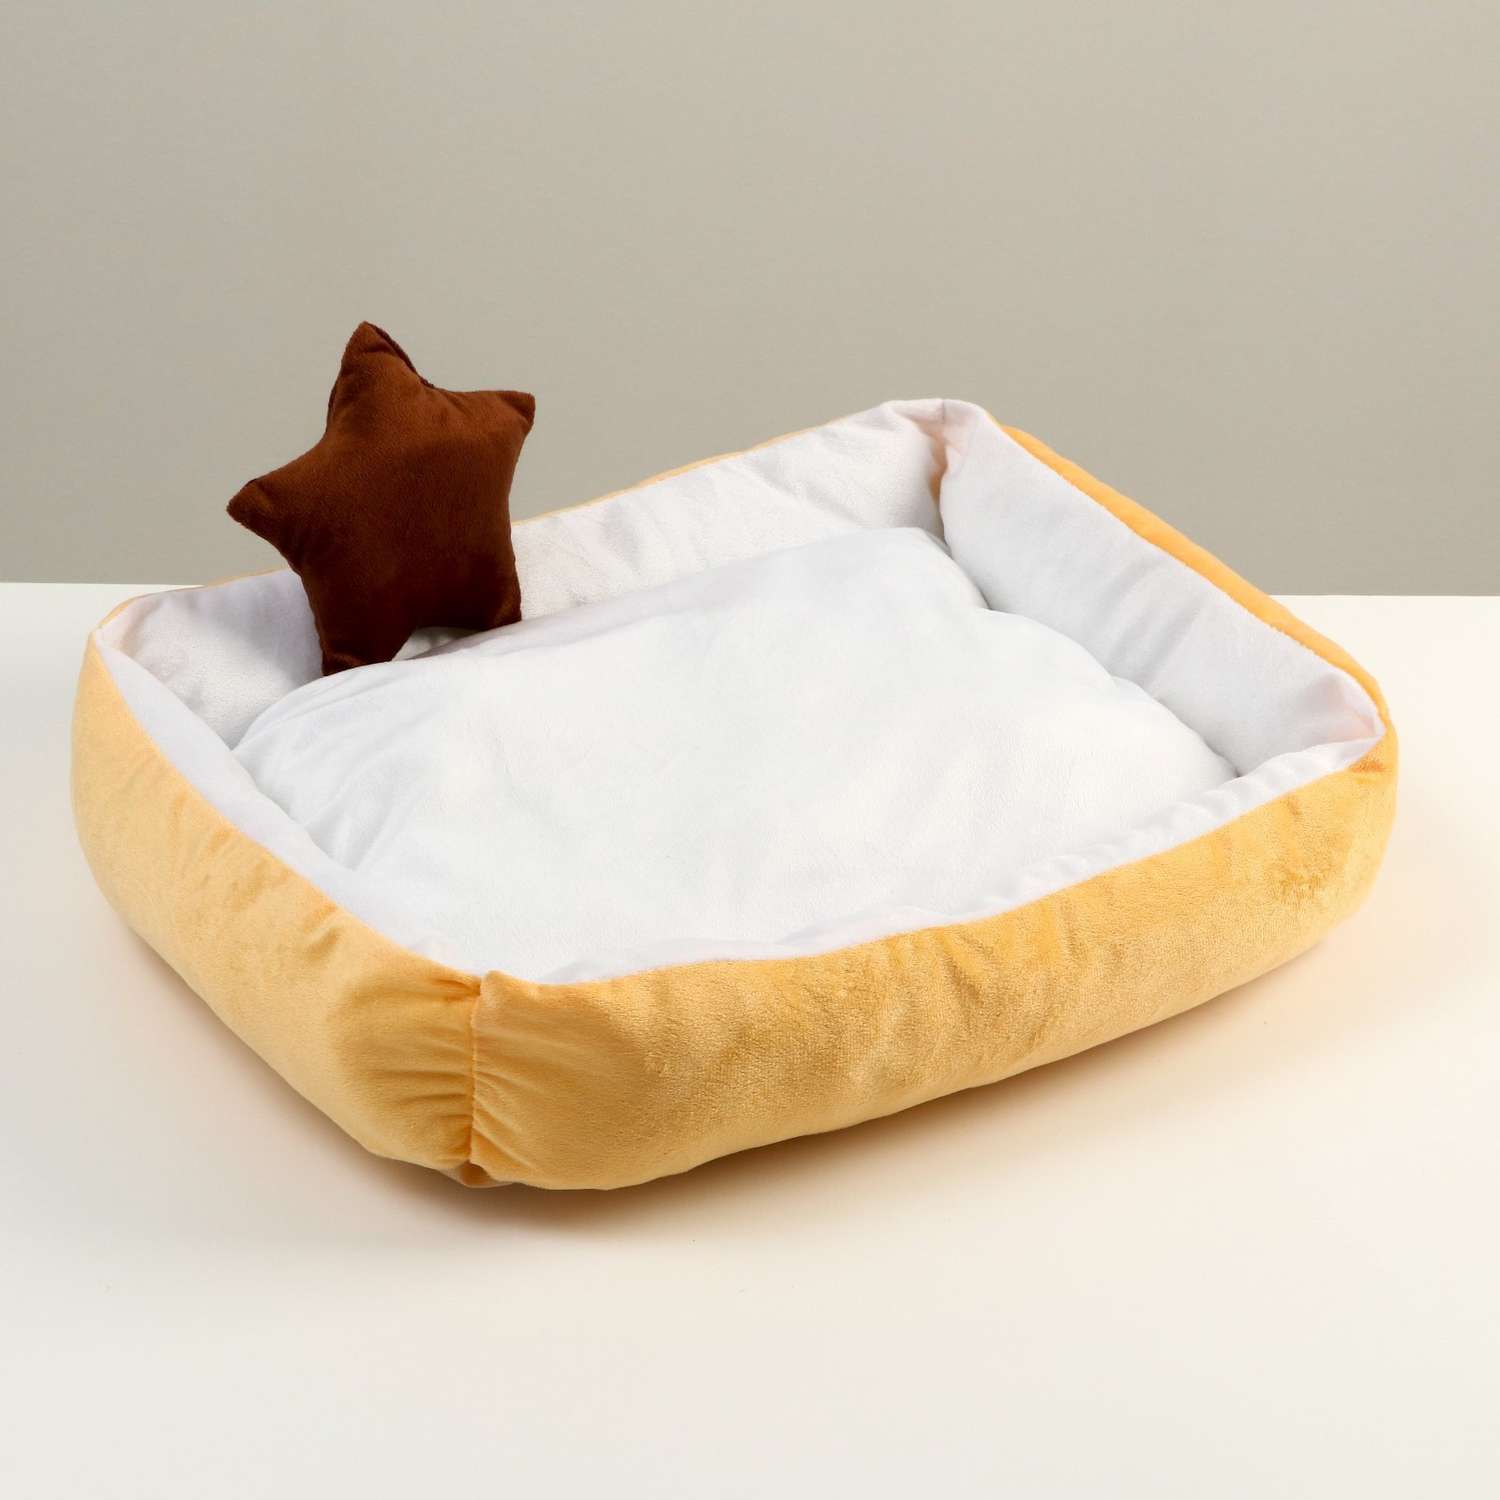 Лежанка Пижон мягкая прямоугольная со съемной подушкой + игрушка звезда 54х42х11 см персик - фото 1